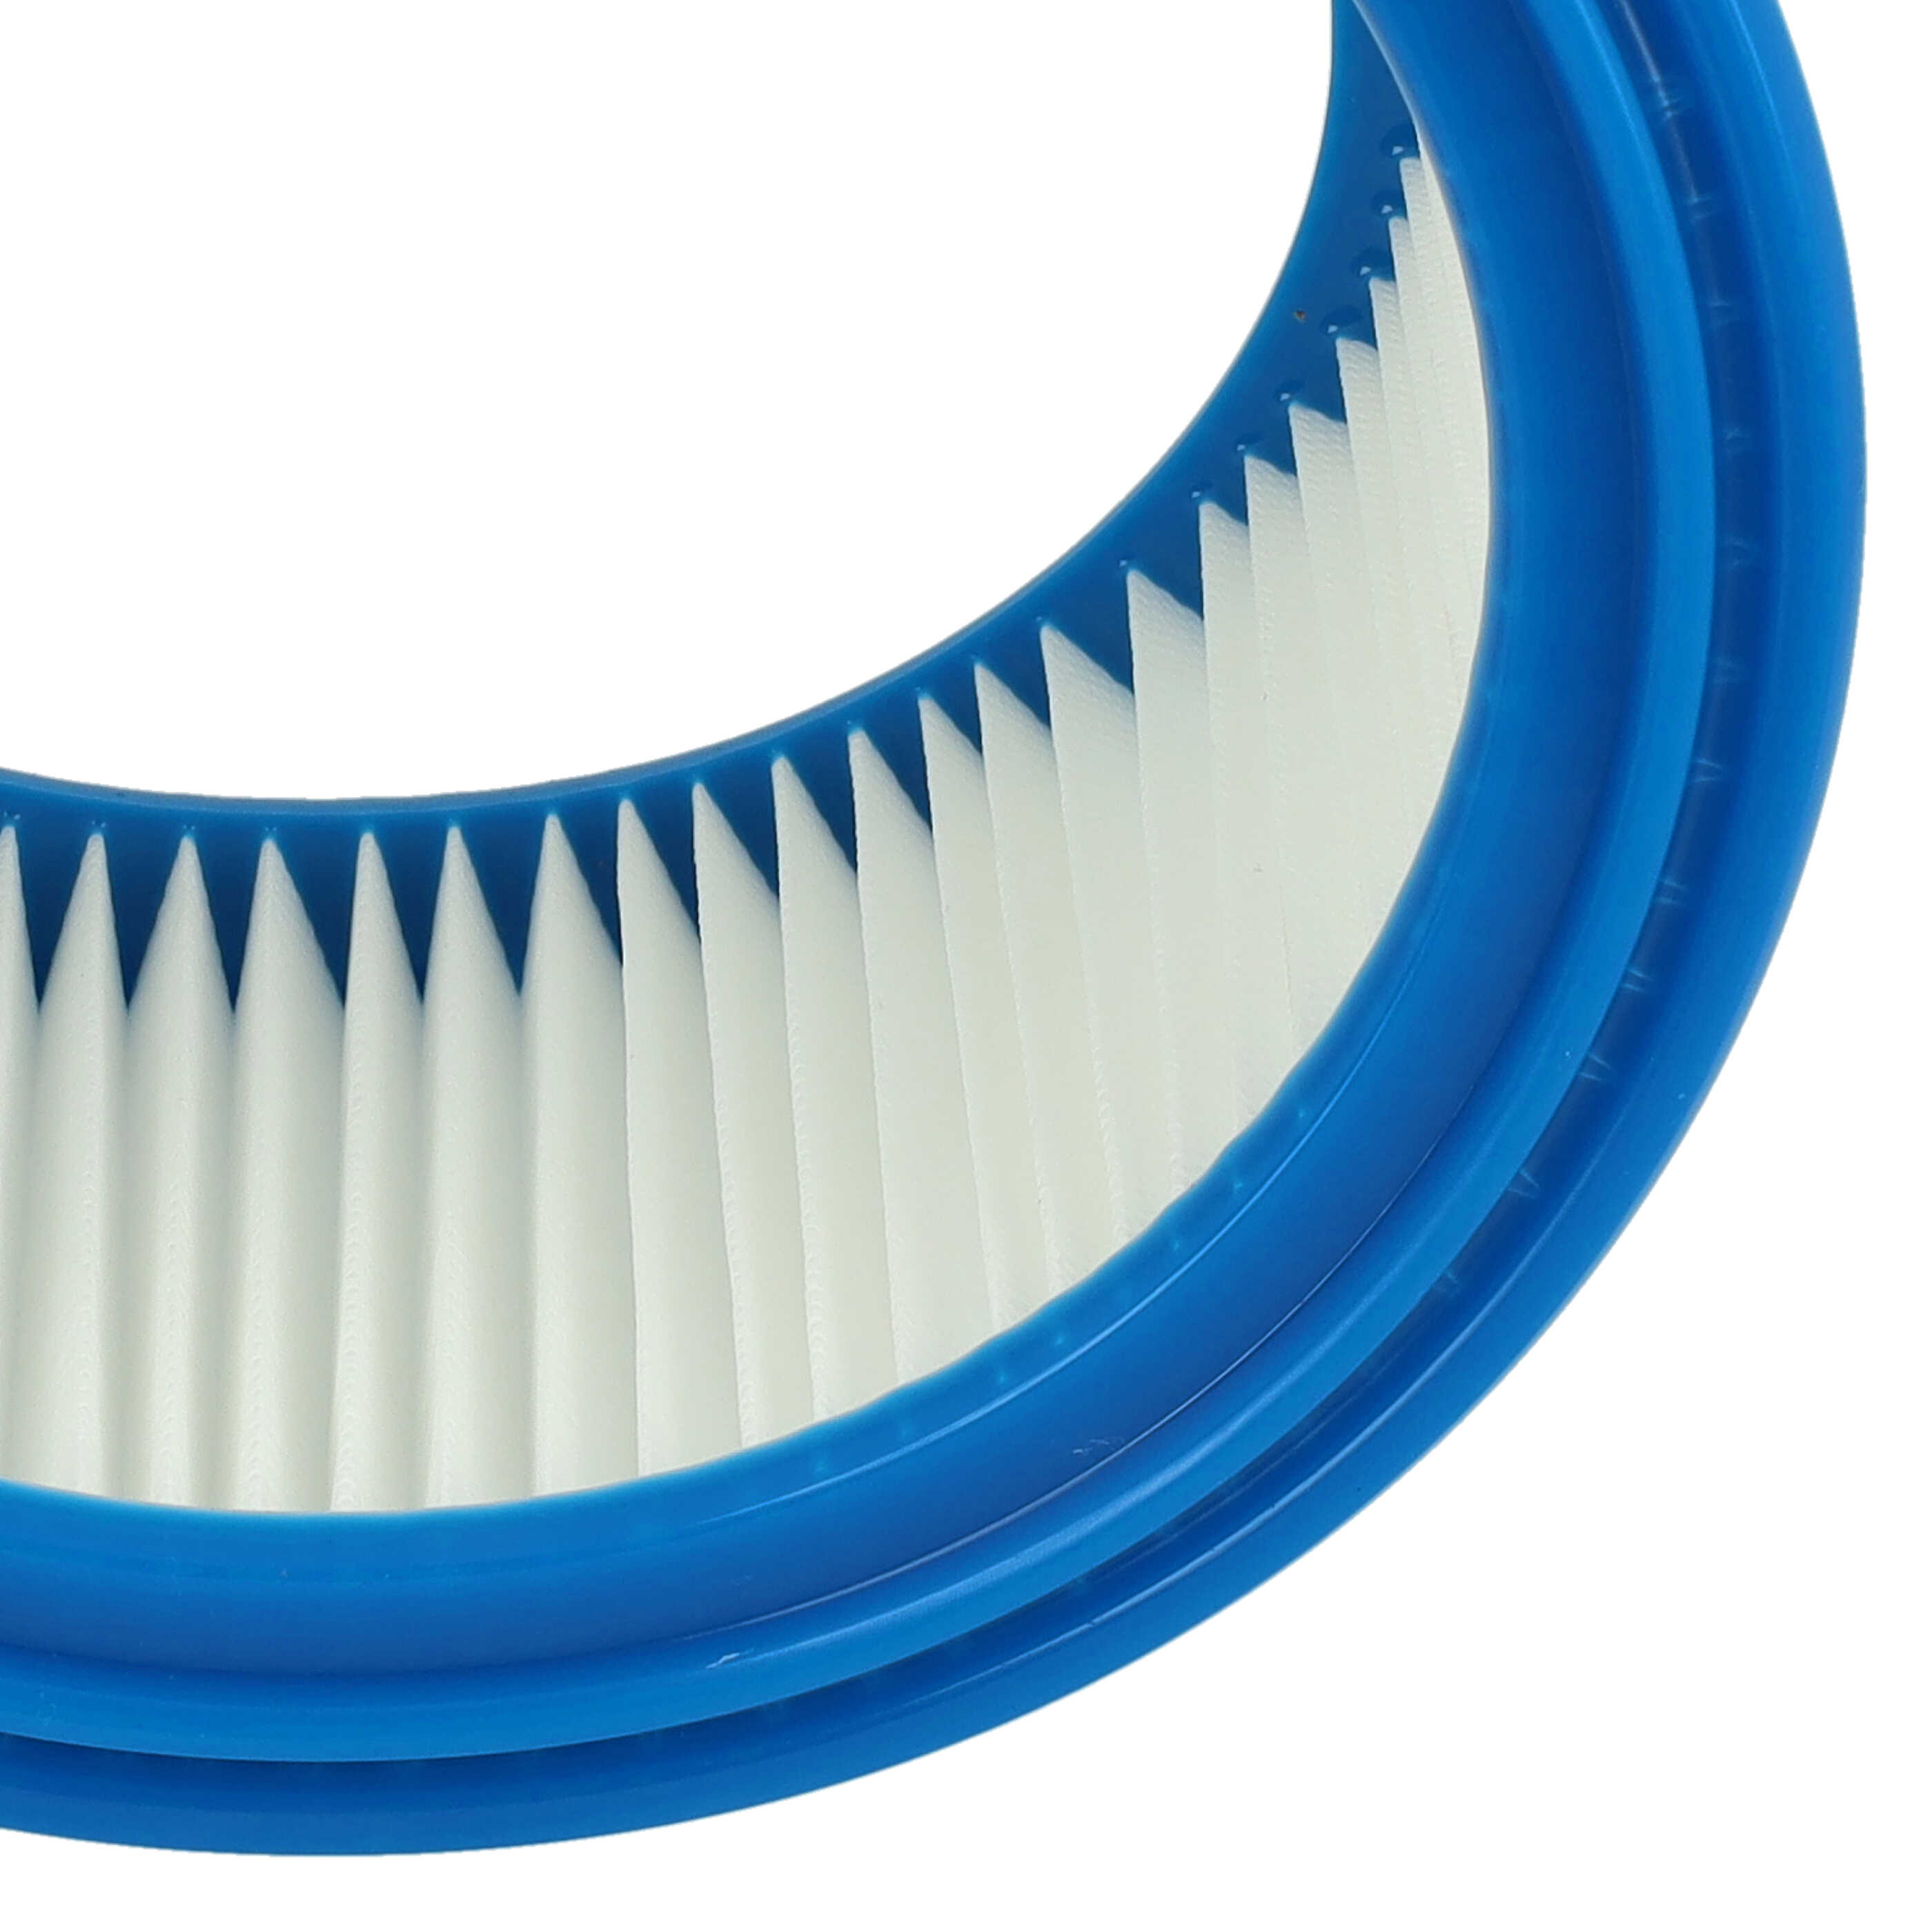 Filtro sostituisce Bosch 2607432024 per aspirapolvere - filtro rotondo, bianco / blu